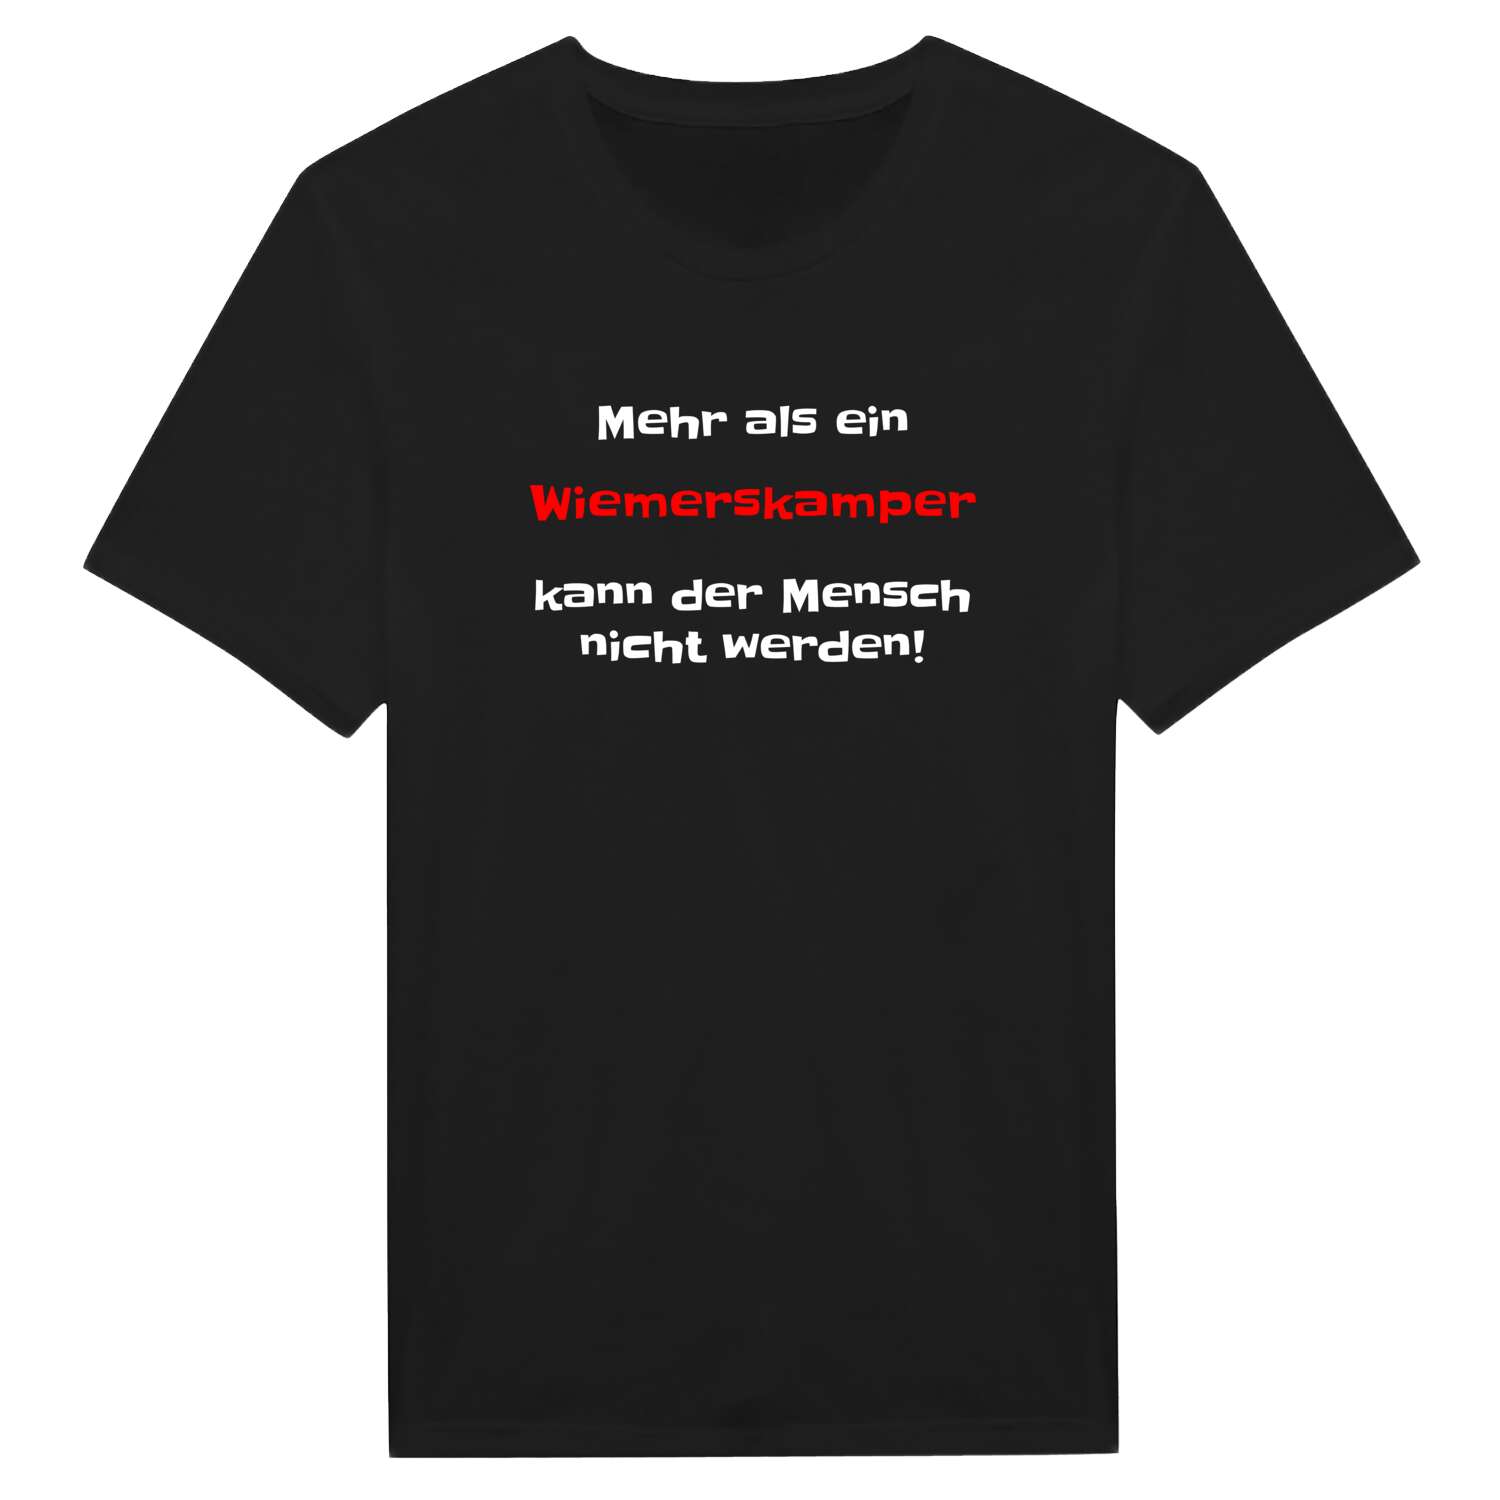 Wiemerskamp T-Shirt »Mehr als ein«